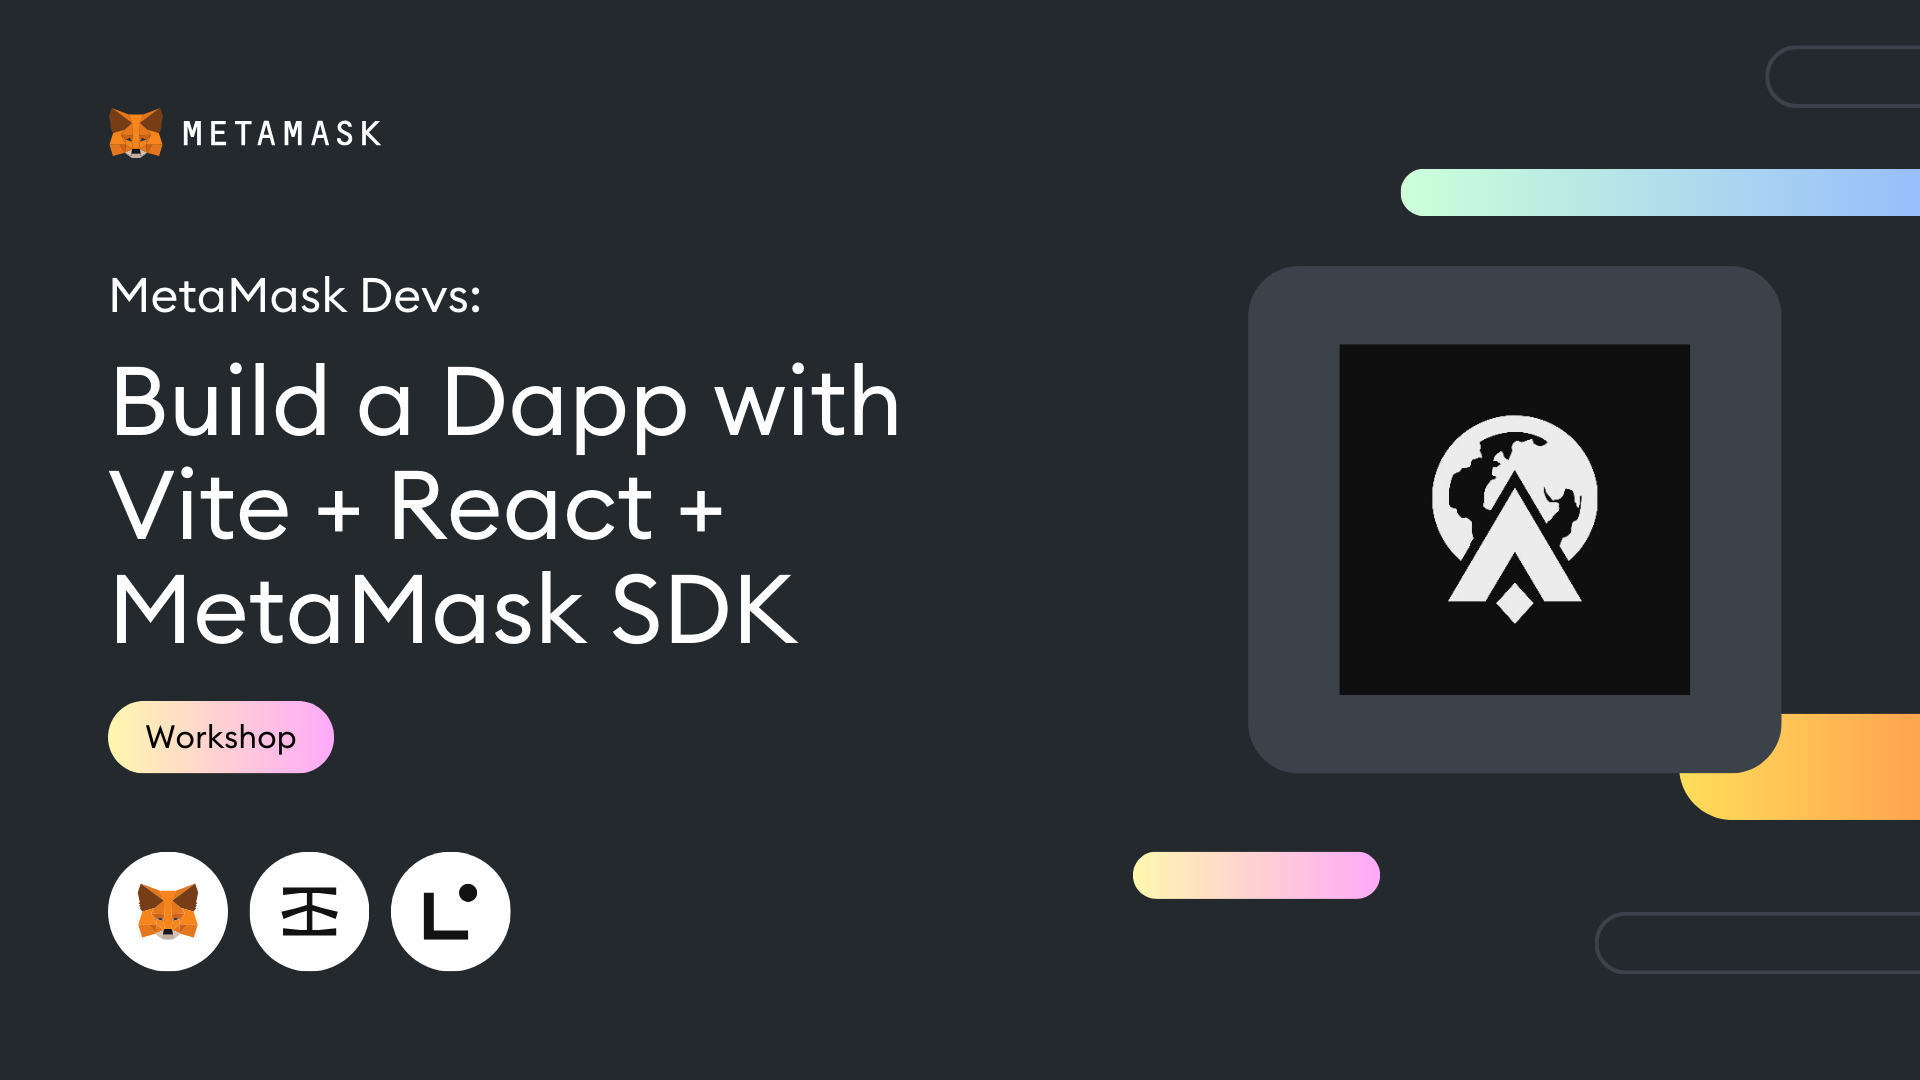 Build a Dapp with ViteJS, React and MetaMask SDK